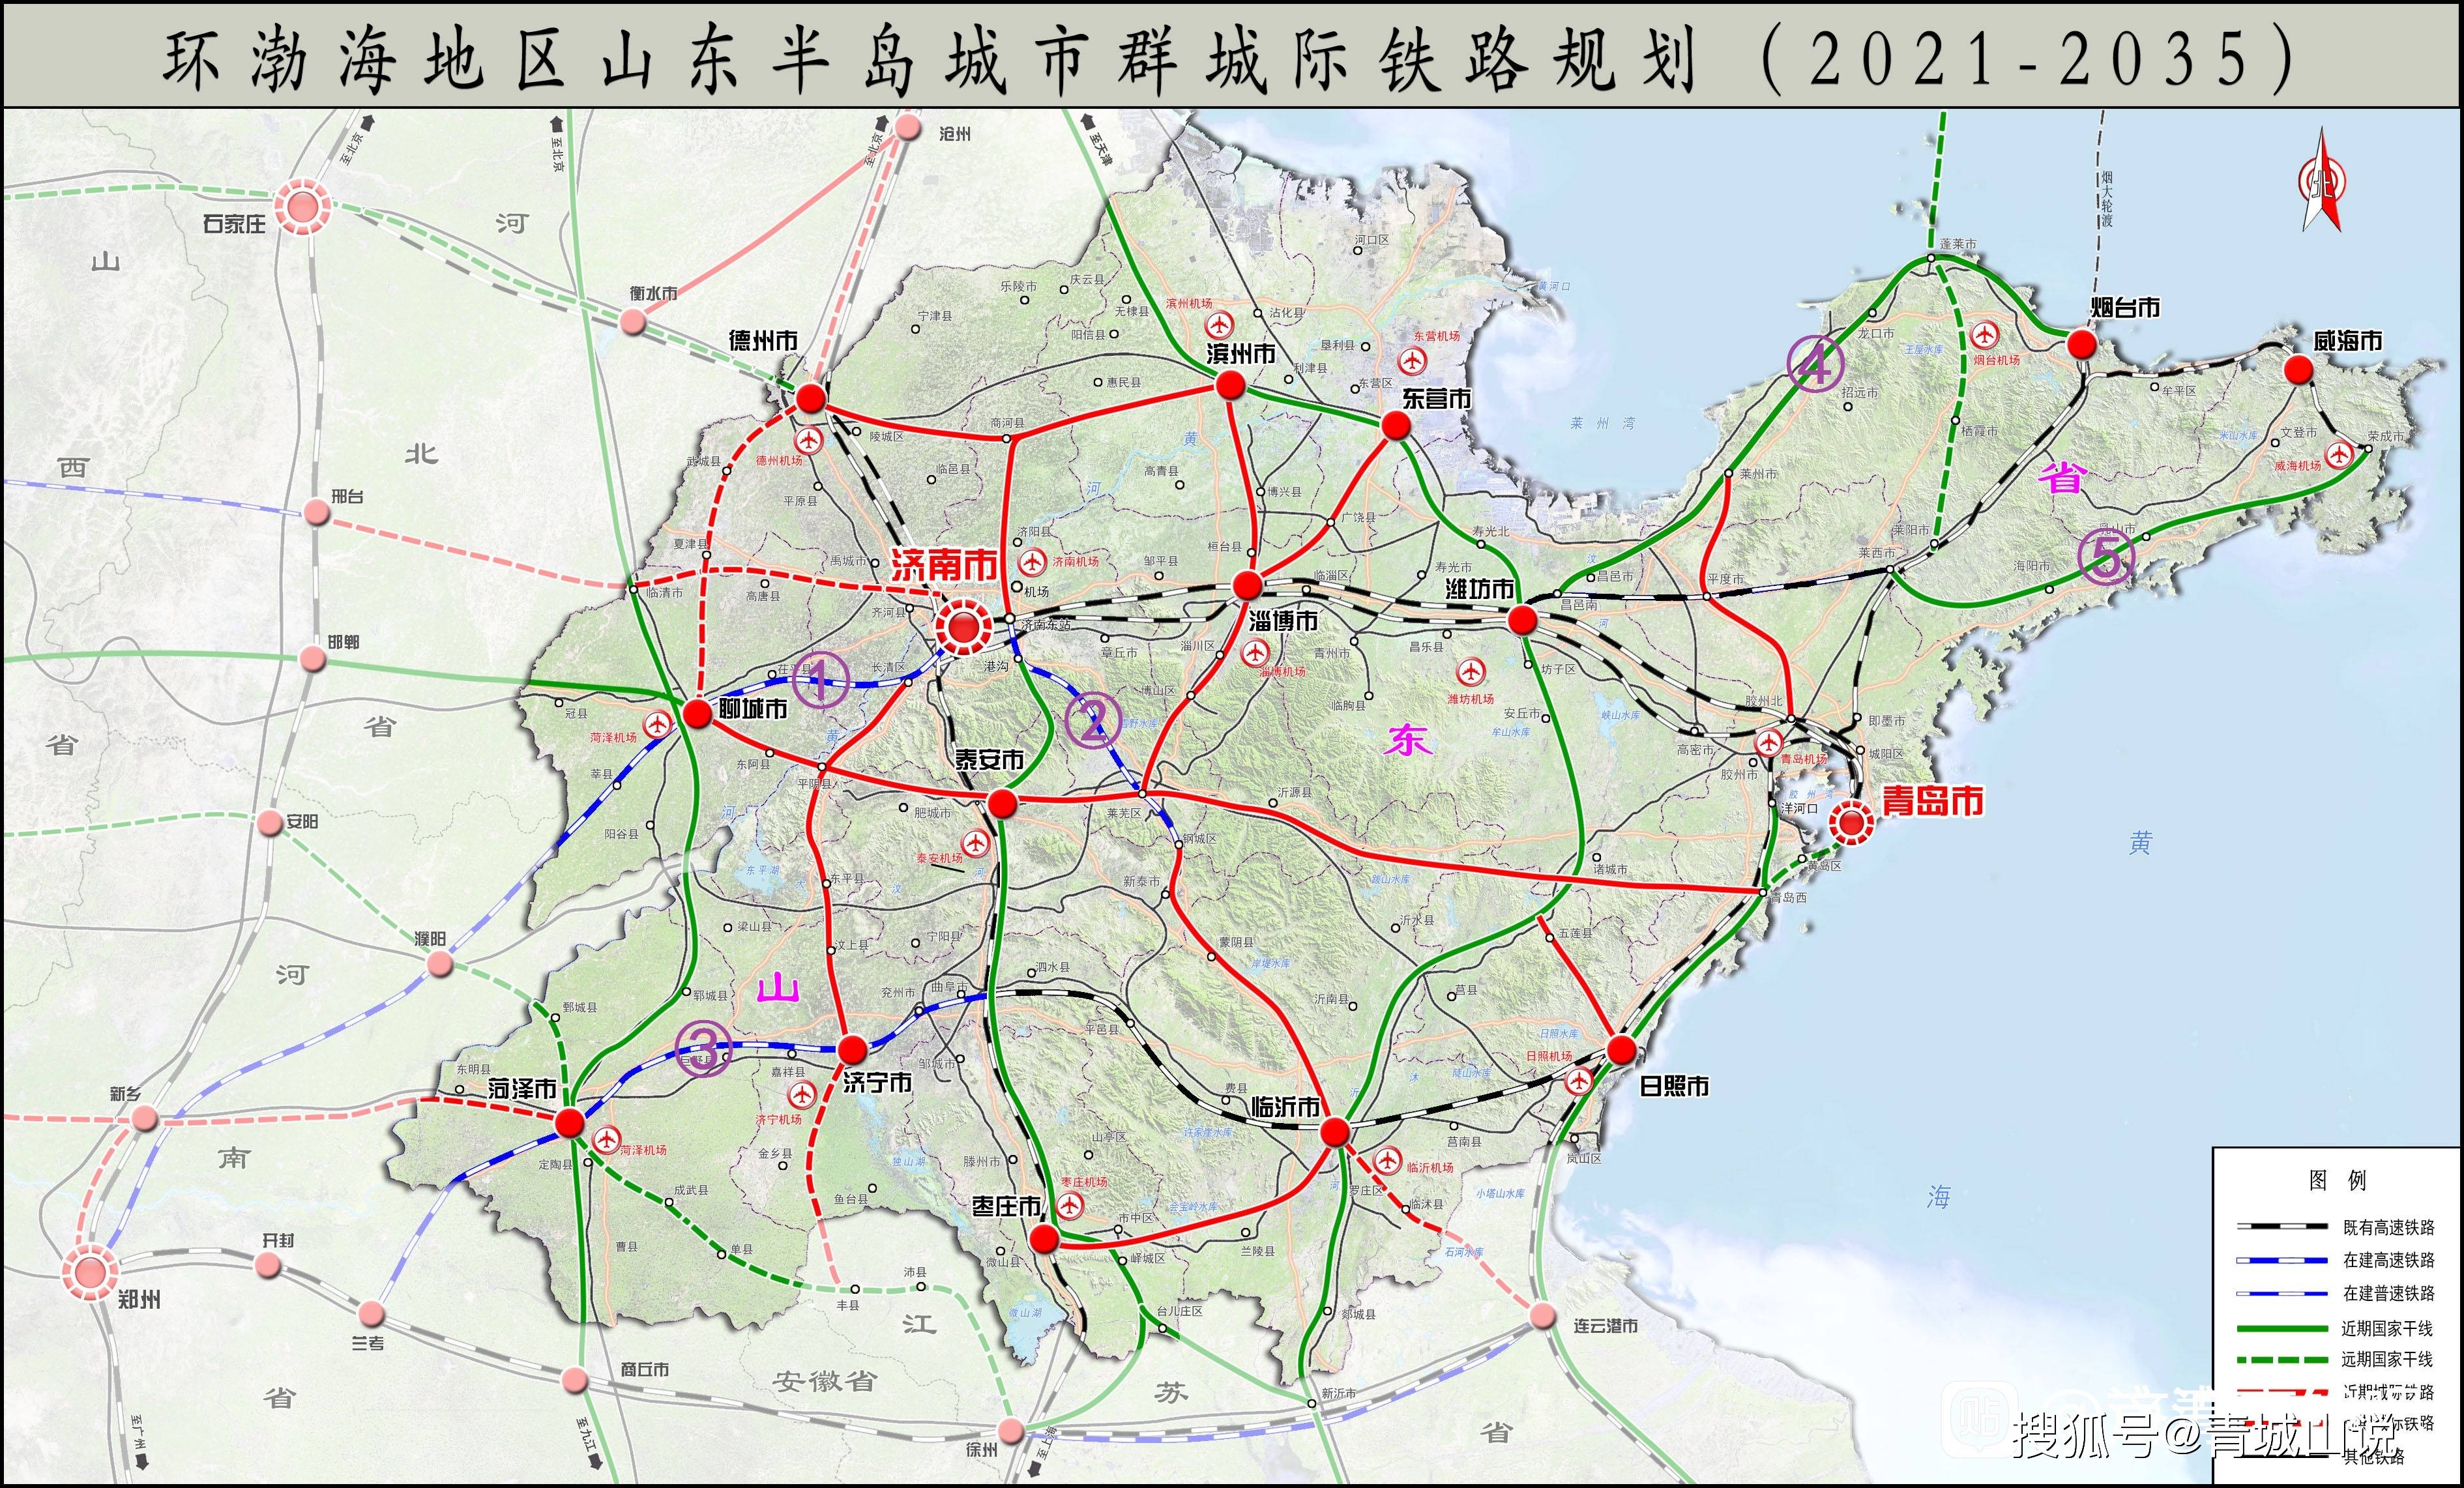 以下是山东省未来的高铁地图,其中一些图例现在有所改变,大家可以点击